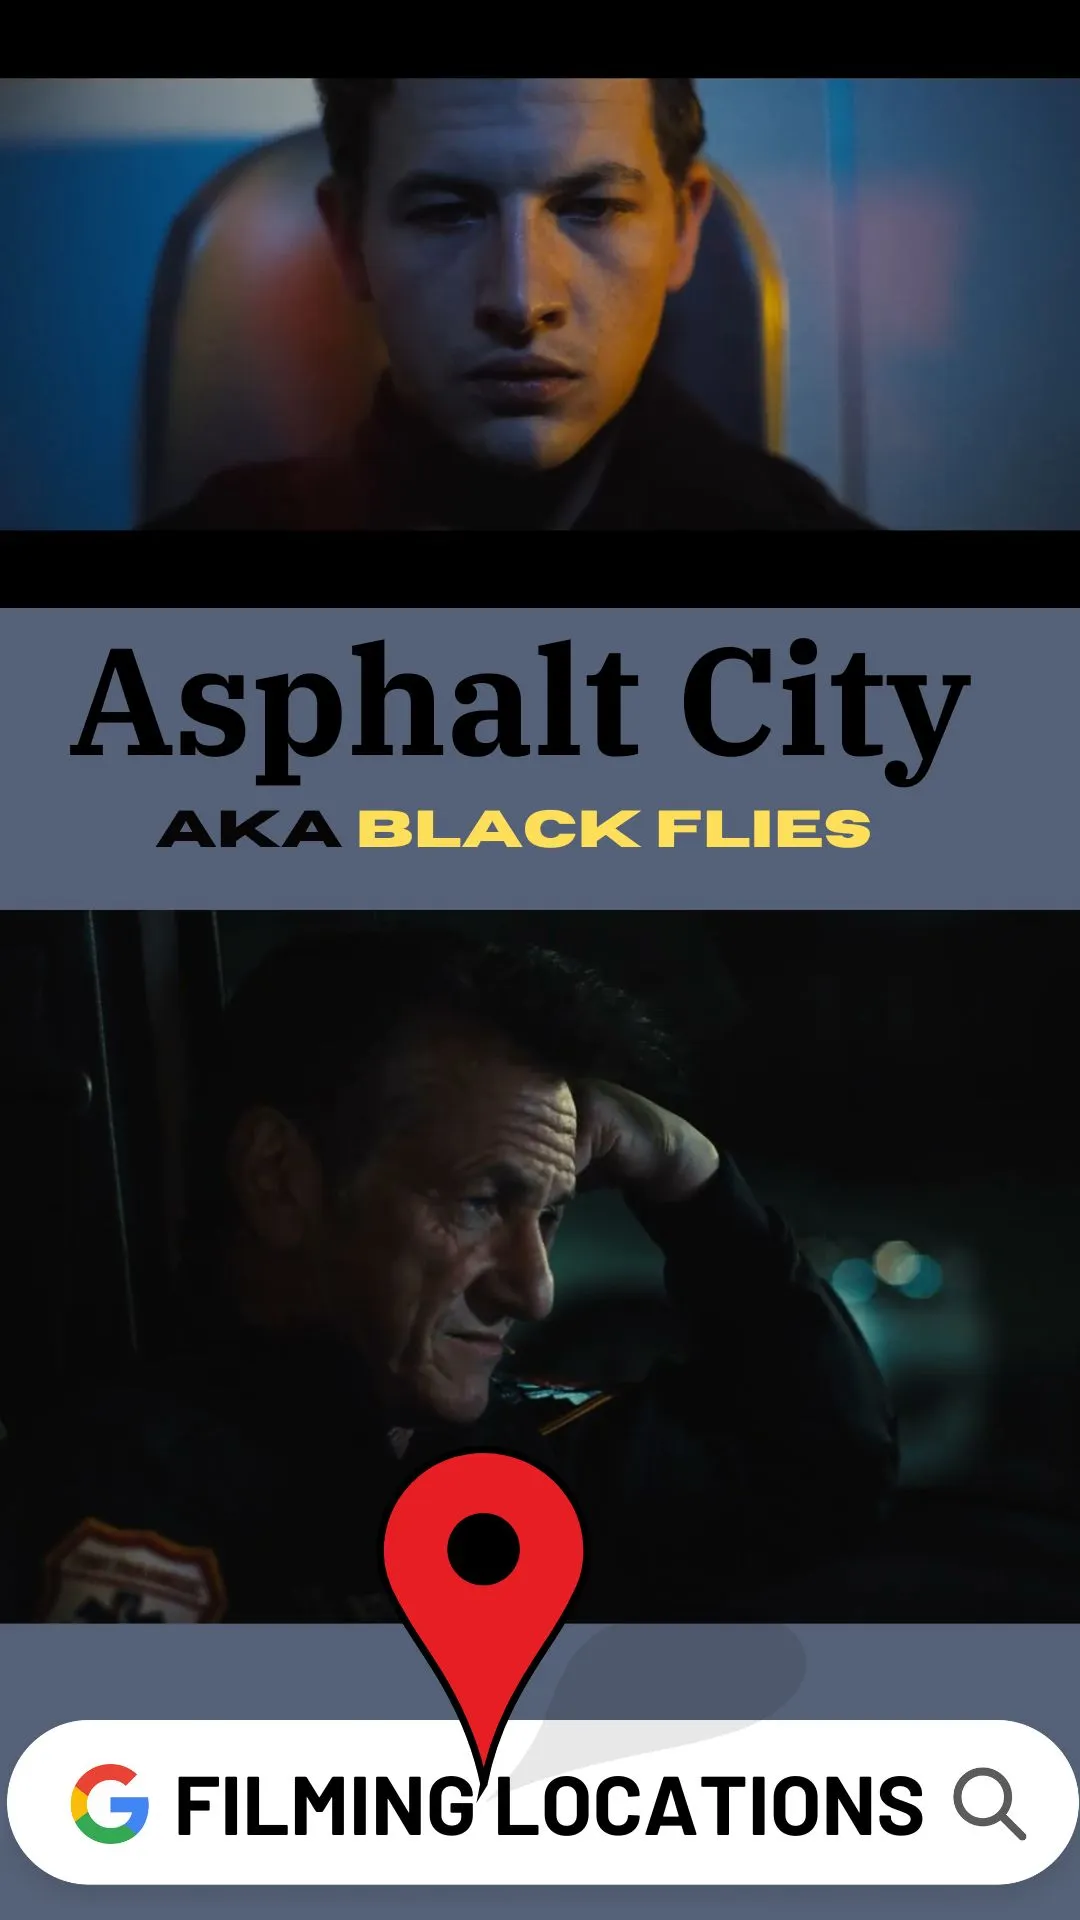 Where Is Asphalt City Filmed